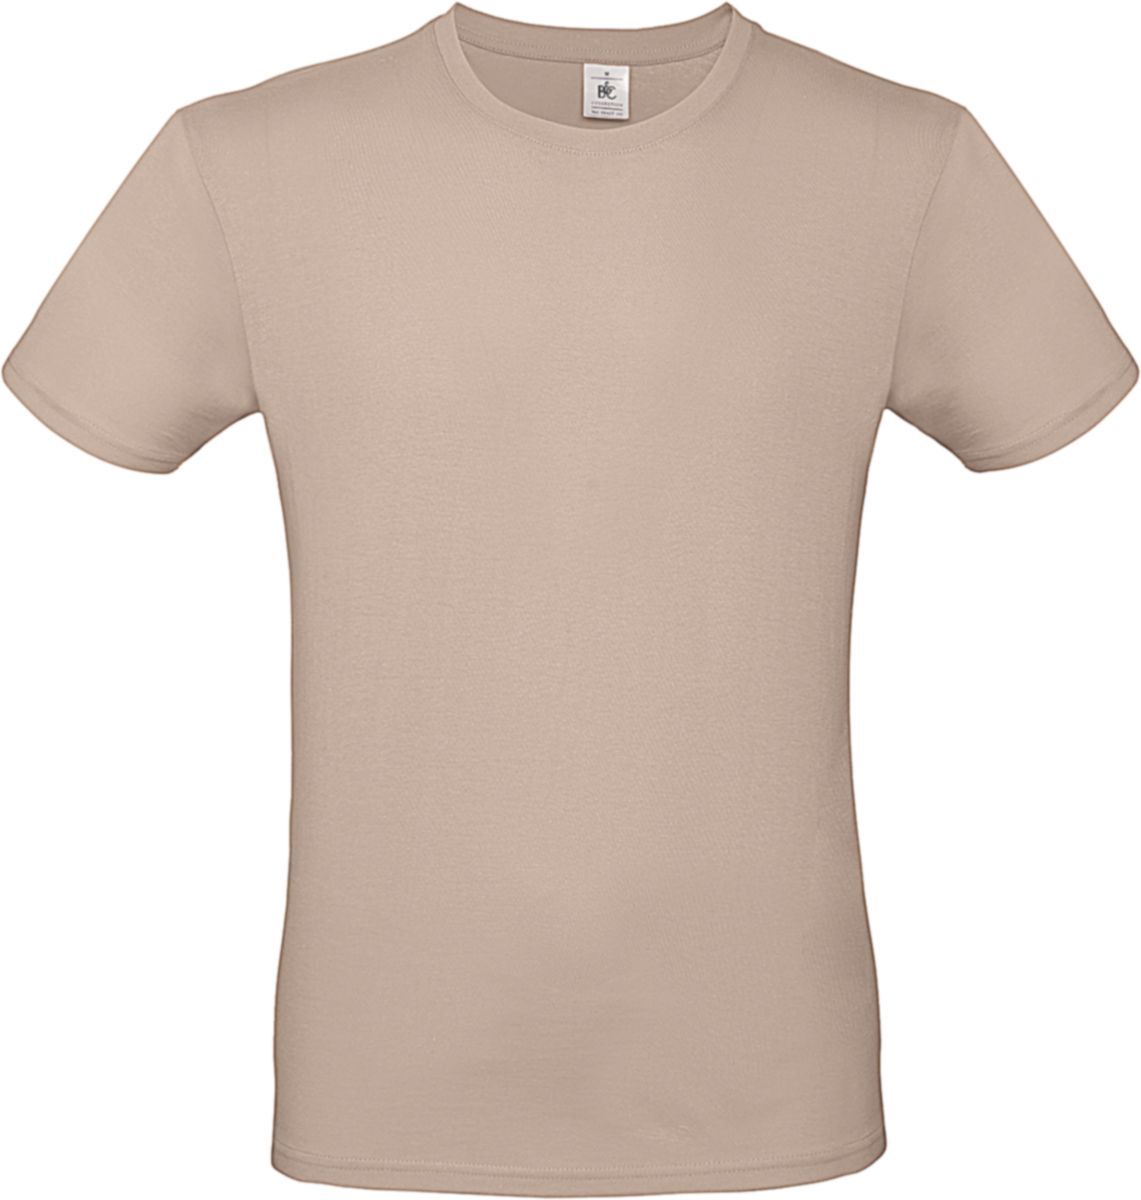 Ανδρικο T Shirt E150 B & C TU01T Millenial Pink